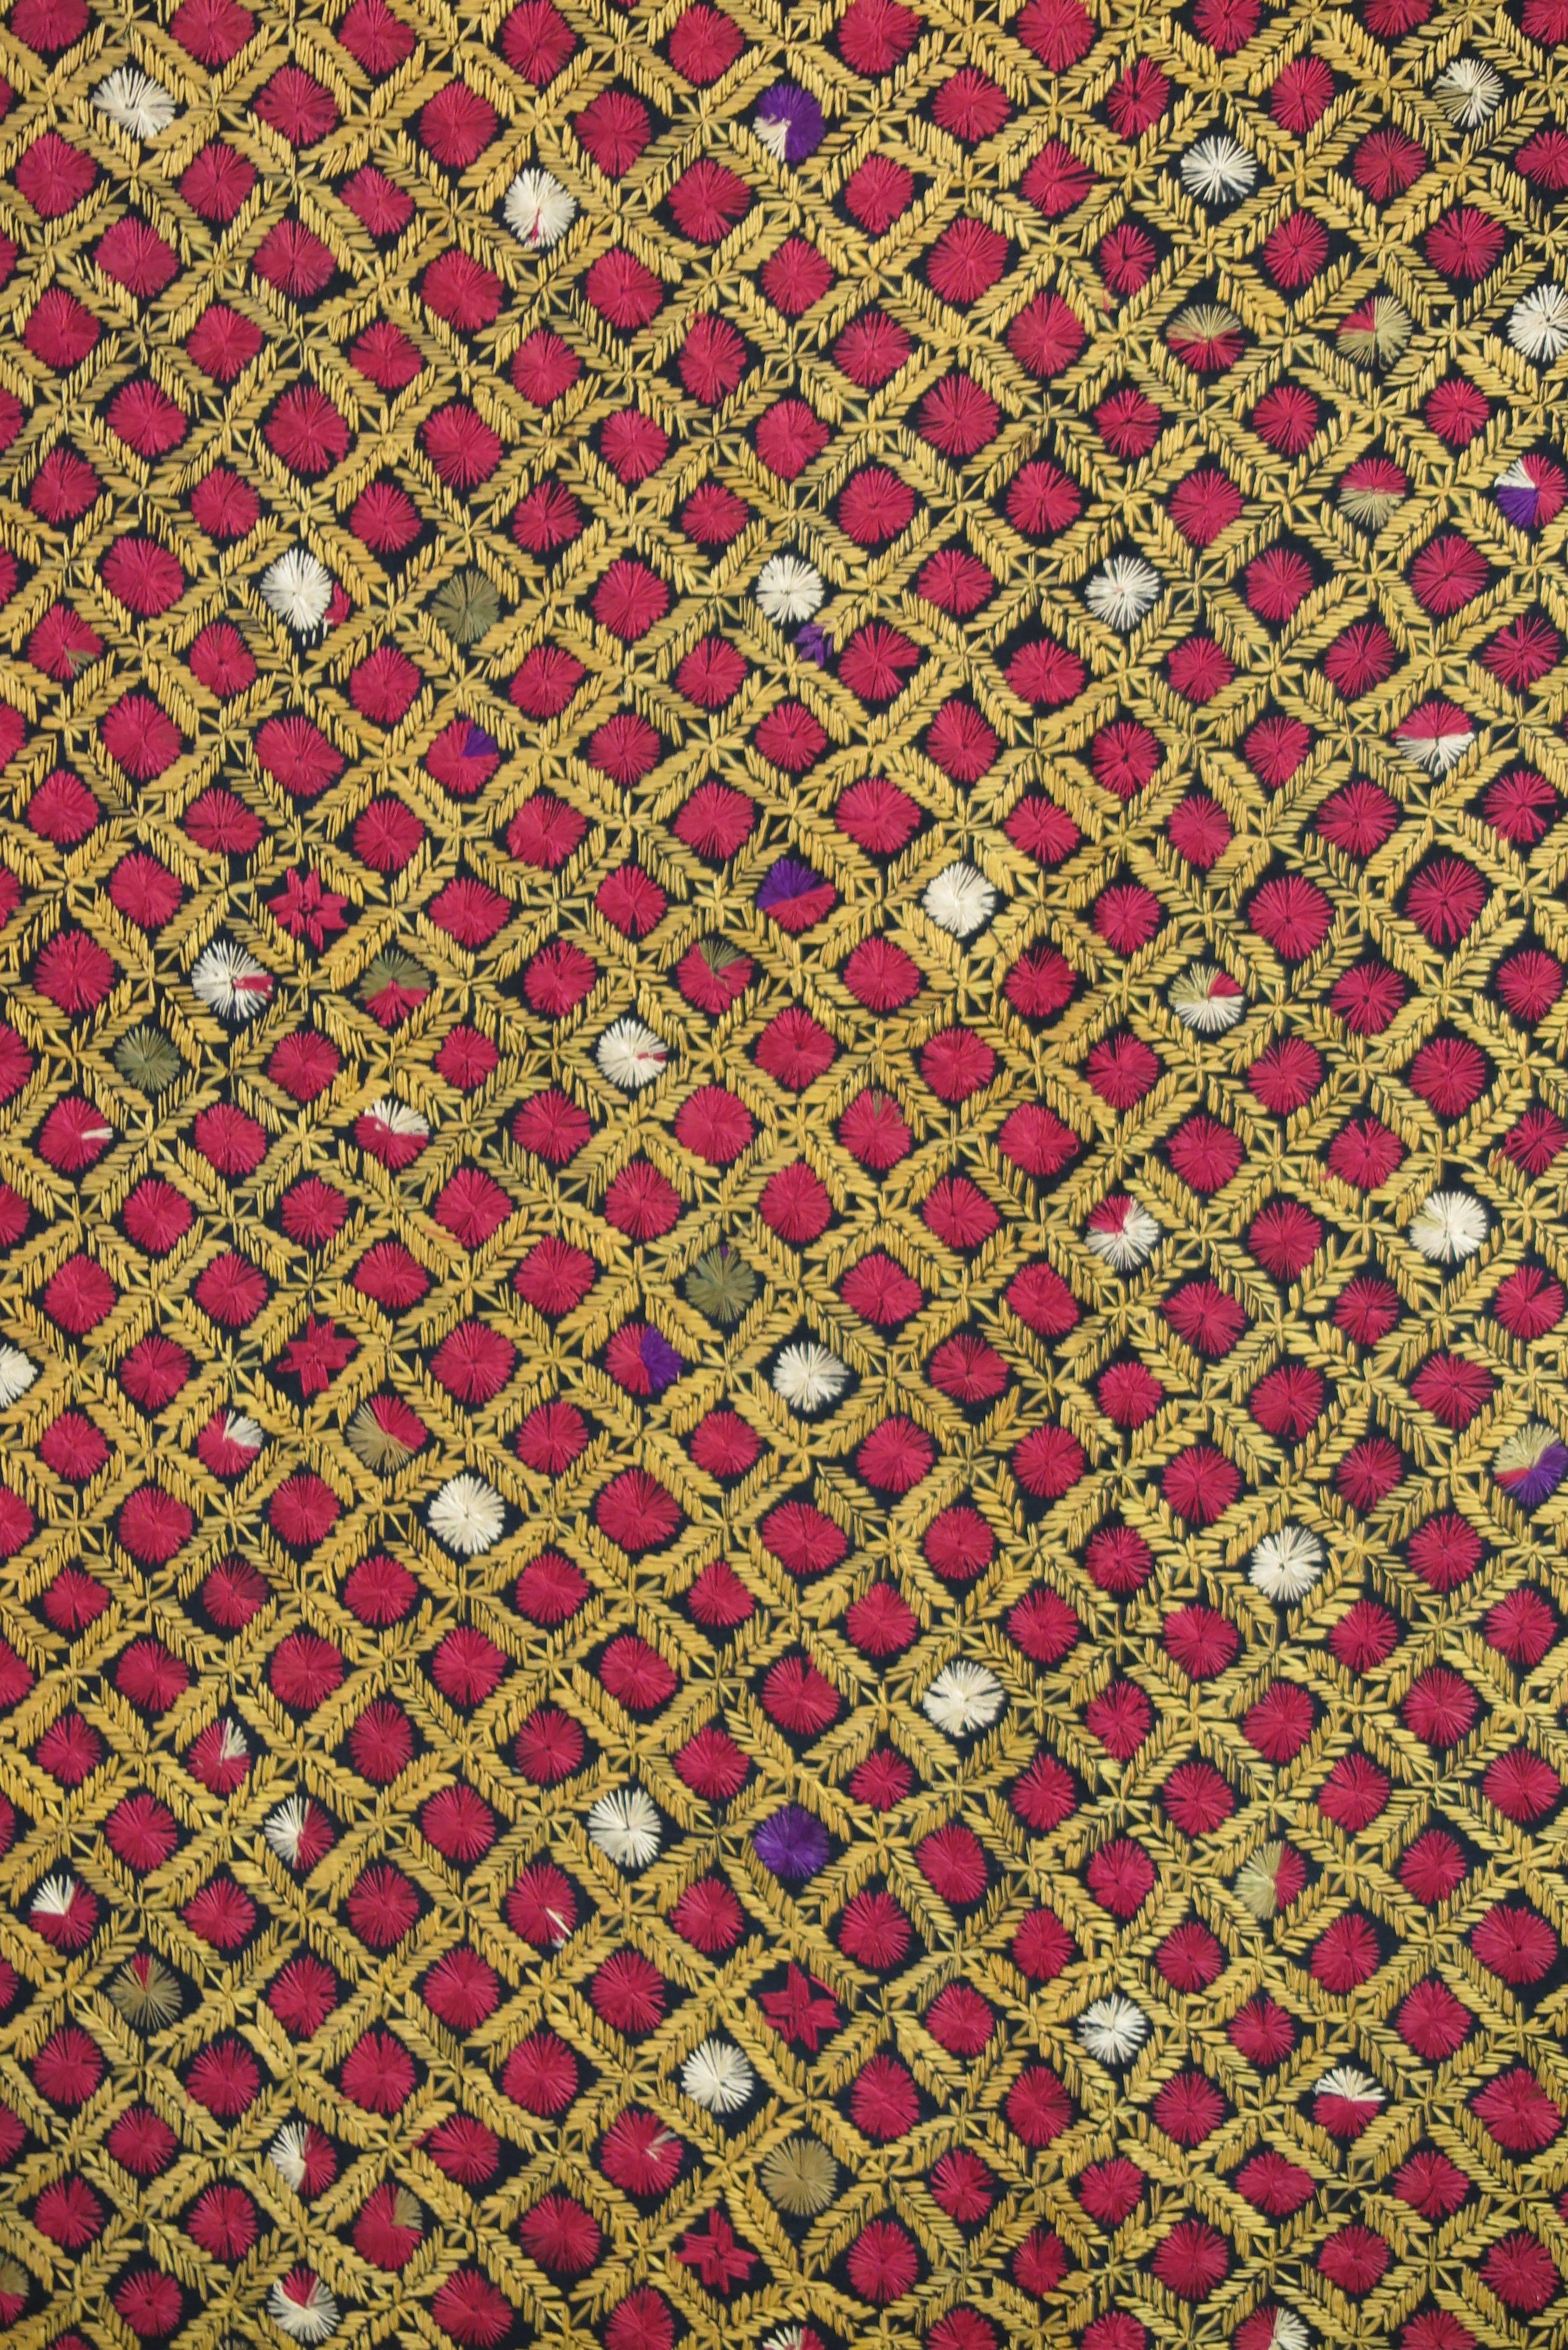 Anglo-Indian Overall Hand Embroidered Phulkari Textile